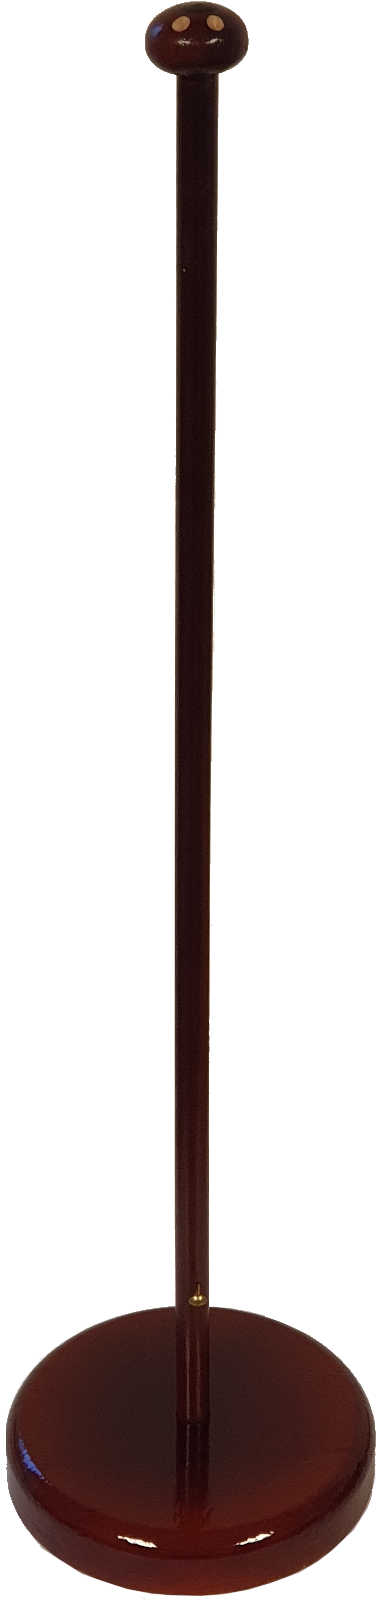 Tischflaggenständer Holz Farbe Mahagoni Flachfuß 11 cm